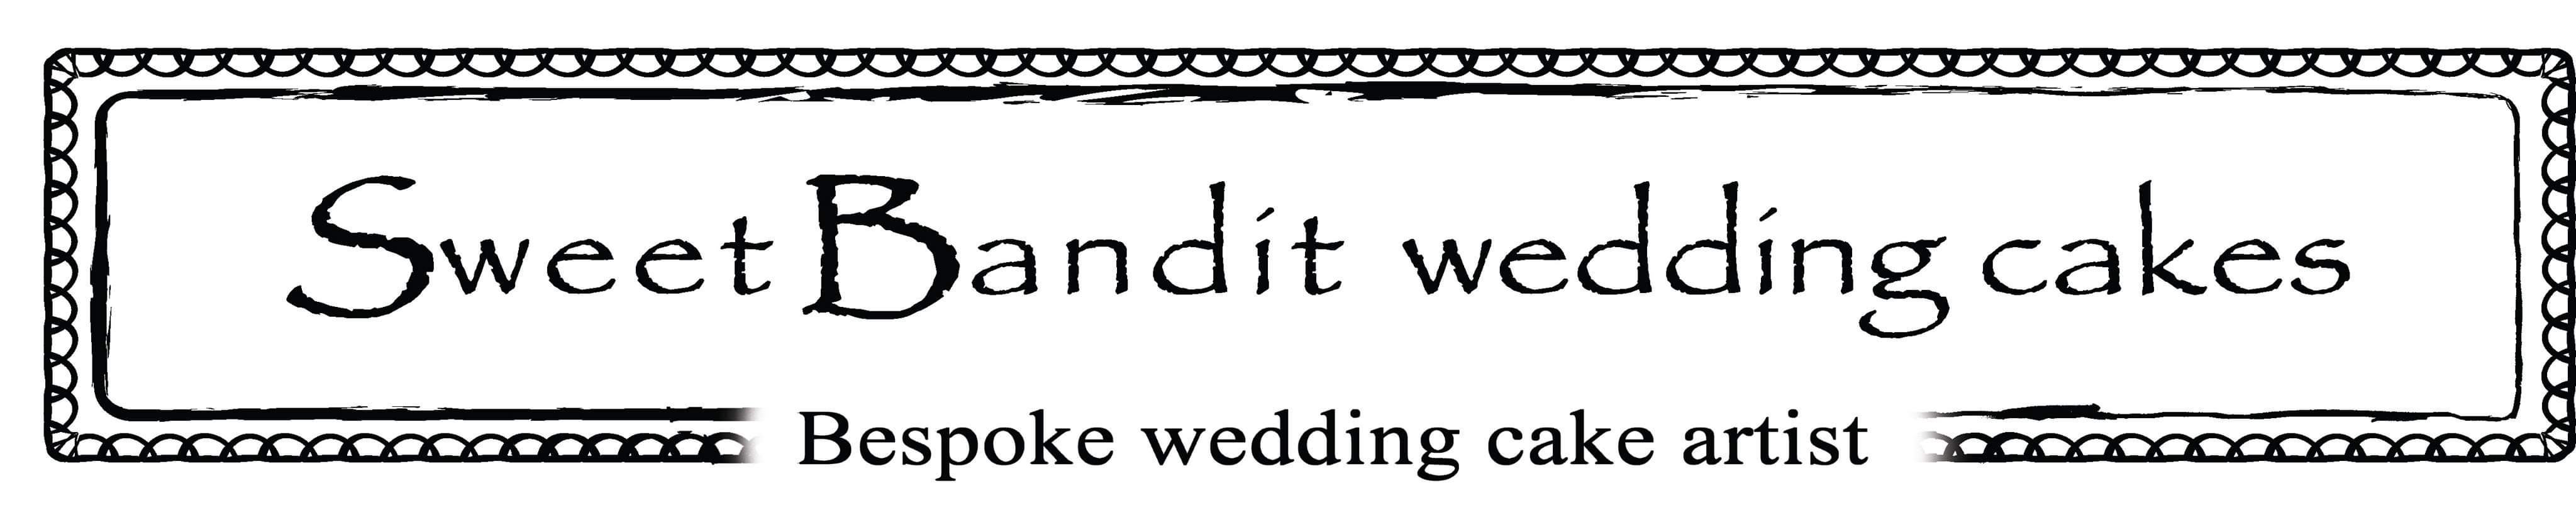 Sweet Bandit Wedding Cakes